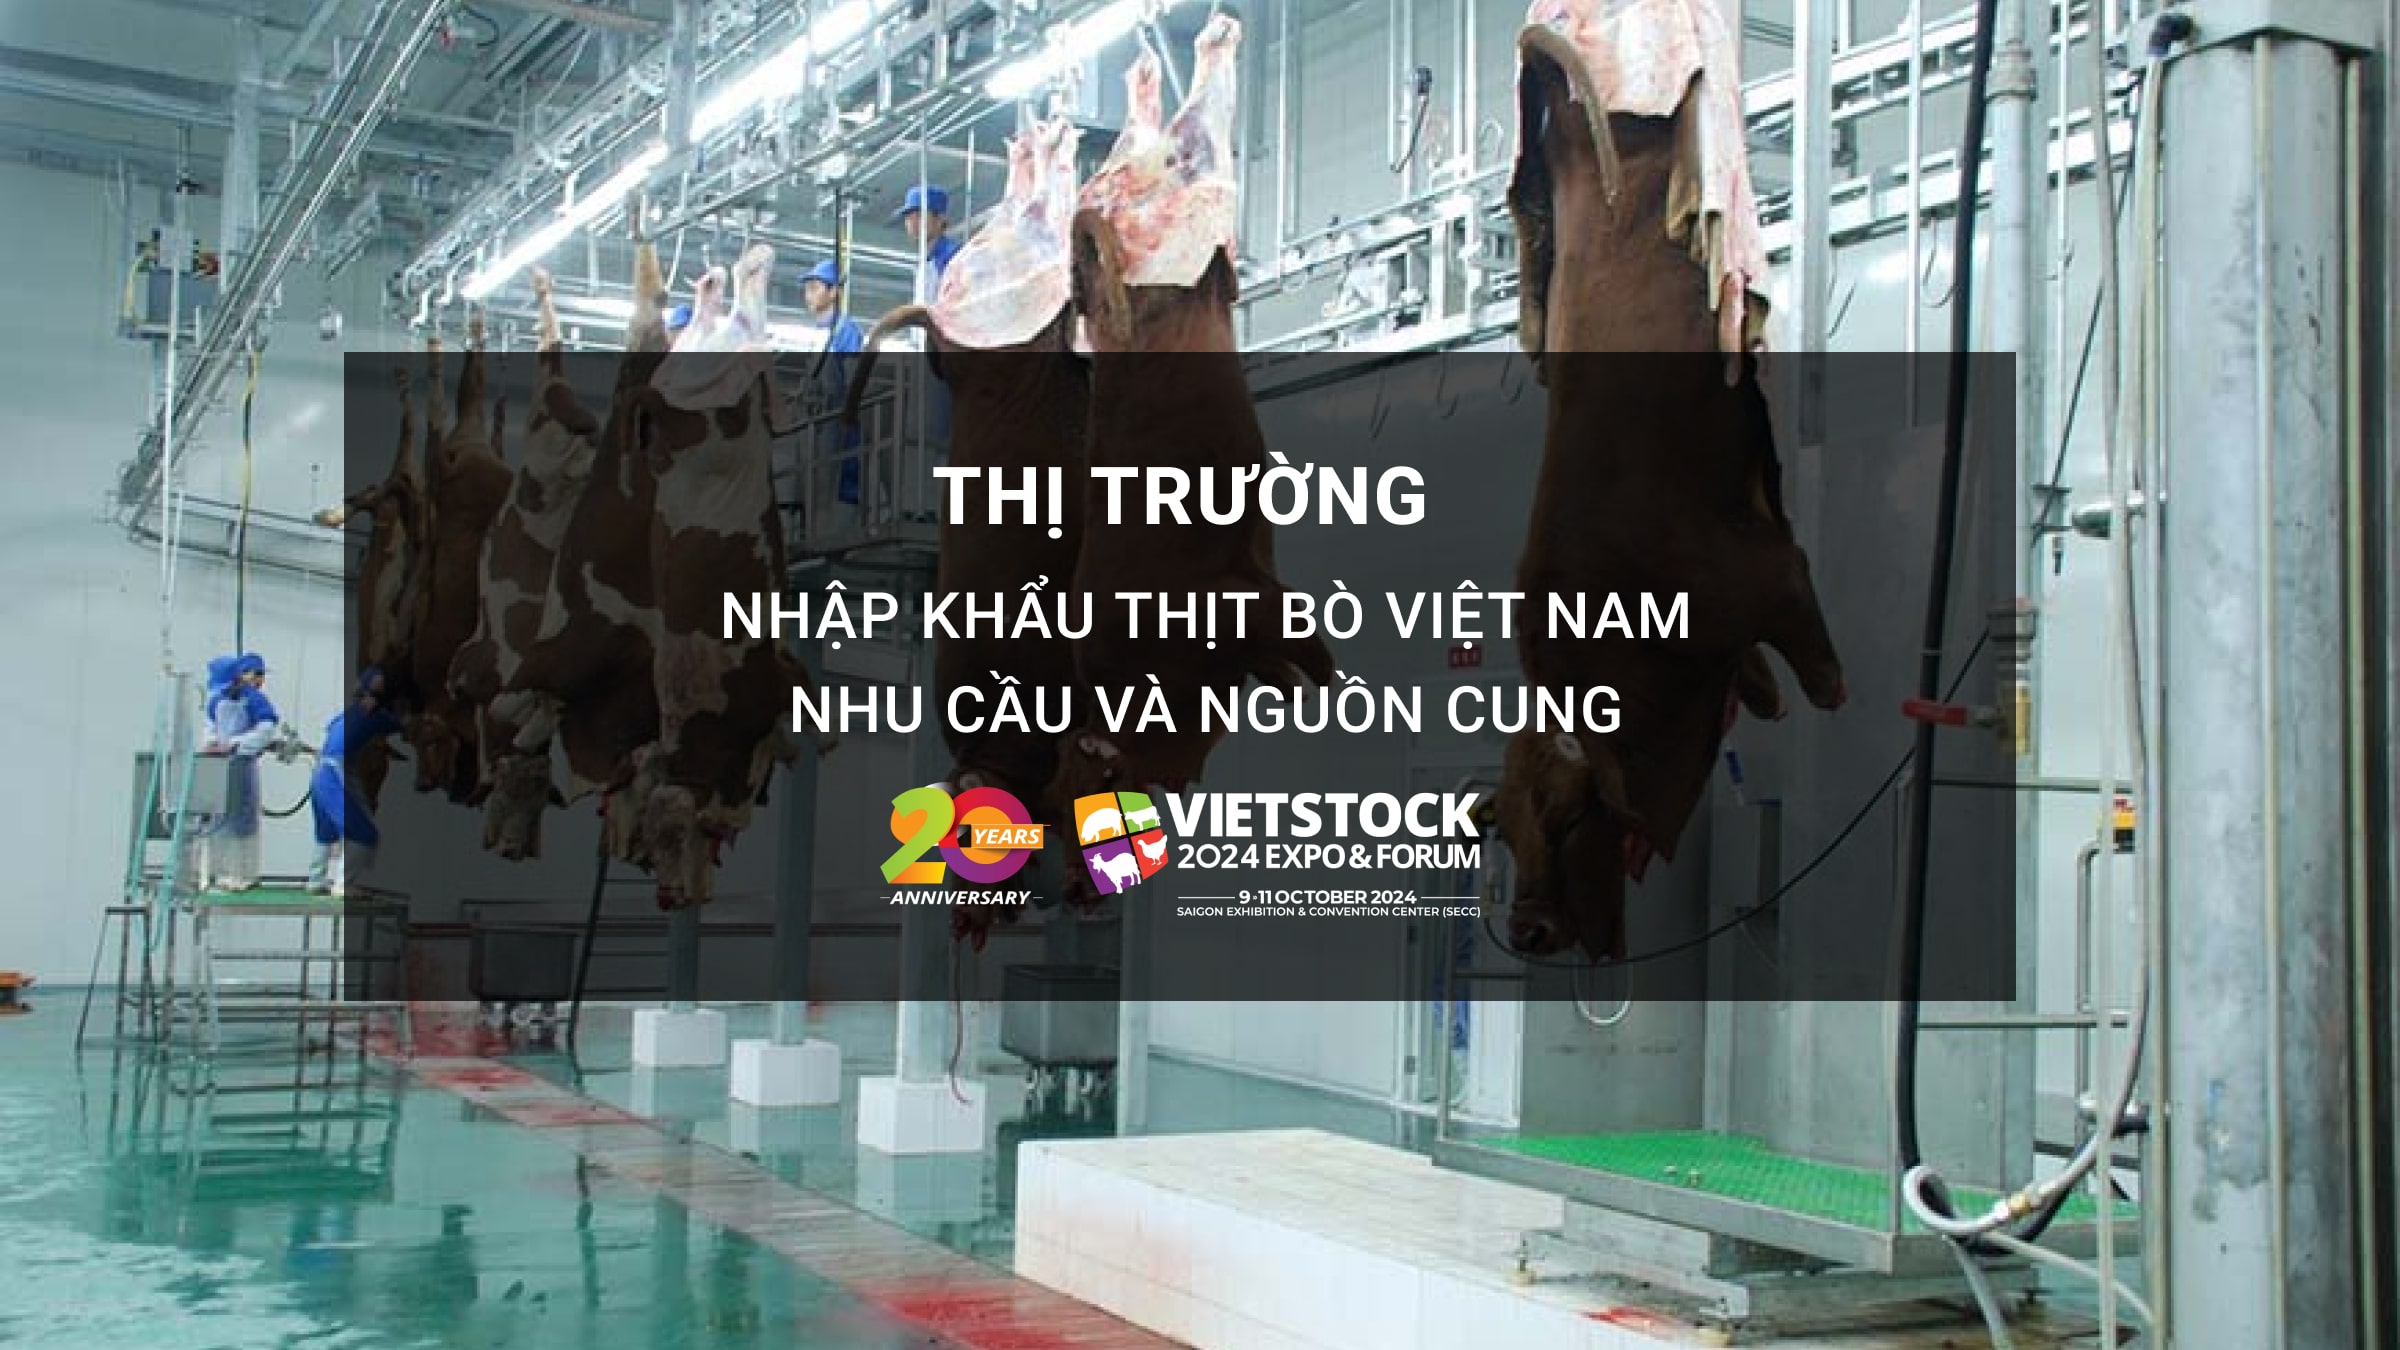 Thị trường nhập khẩu thịt trâu bò Việt Nam: Nhu cầu và nguồn cung